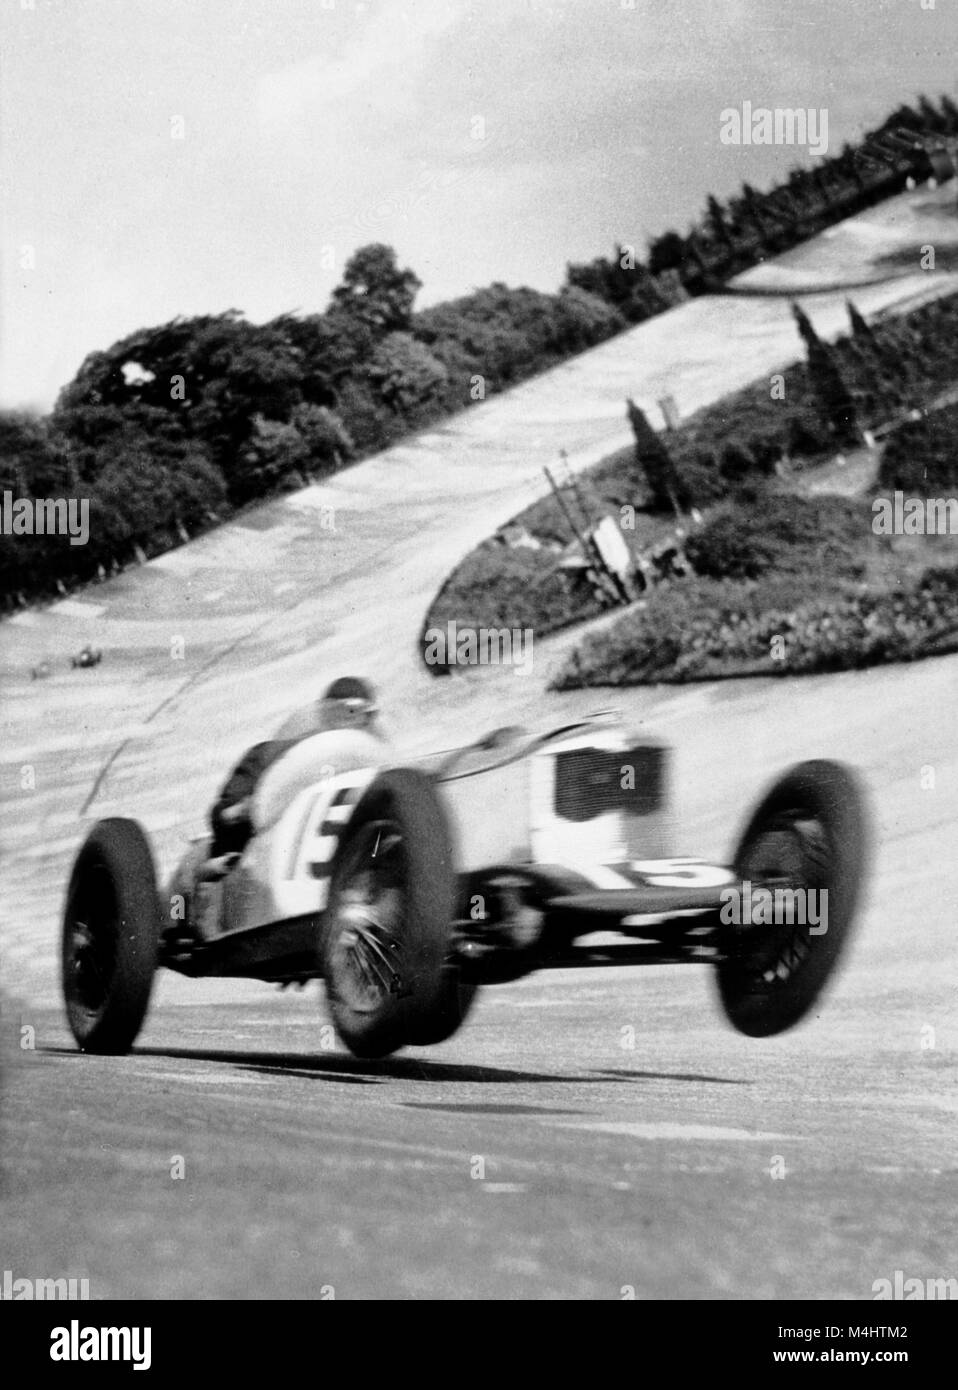 Le sport automobile, voiture de sport à des courses de voiture, ca. 1929, années 1920, lieu exact inconnu, Allemagne Banque D'Images